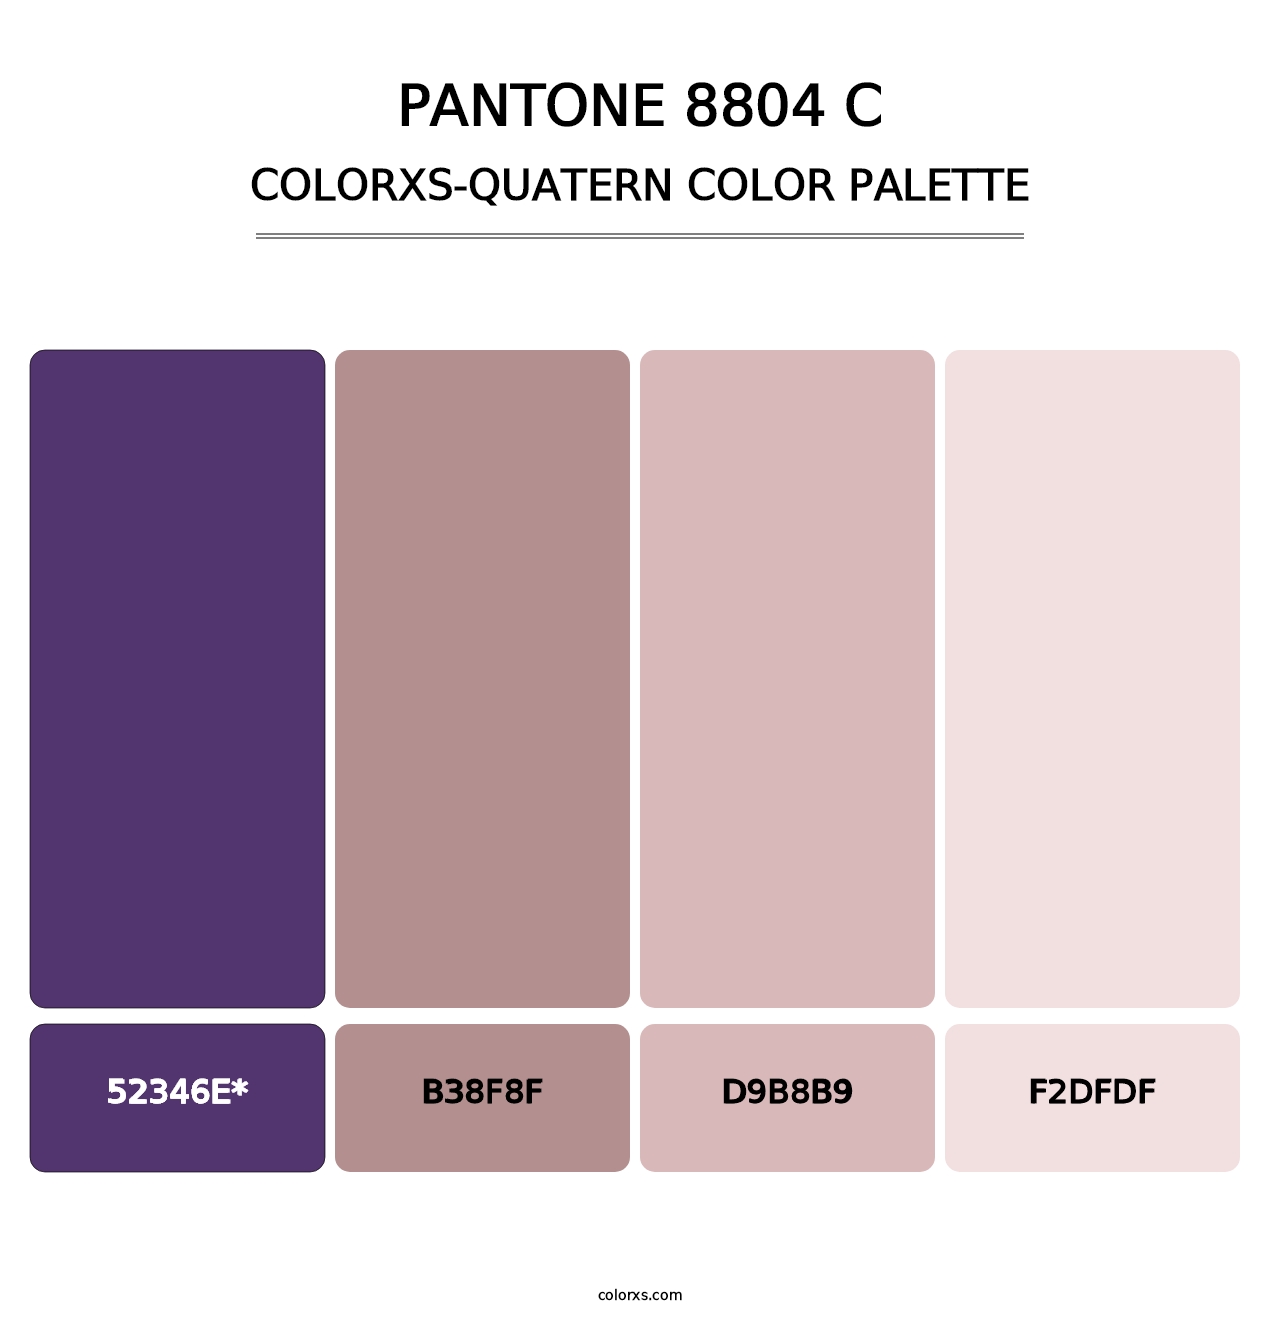 PANTONE 8804 C - Colorxs Quatern Palette